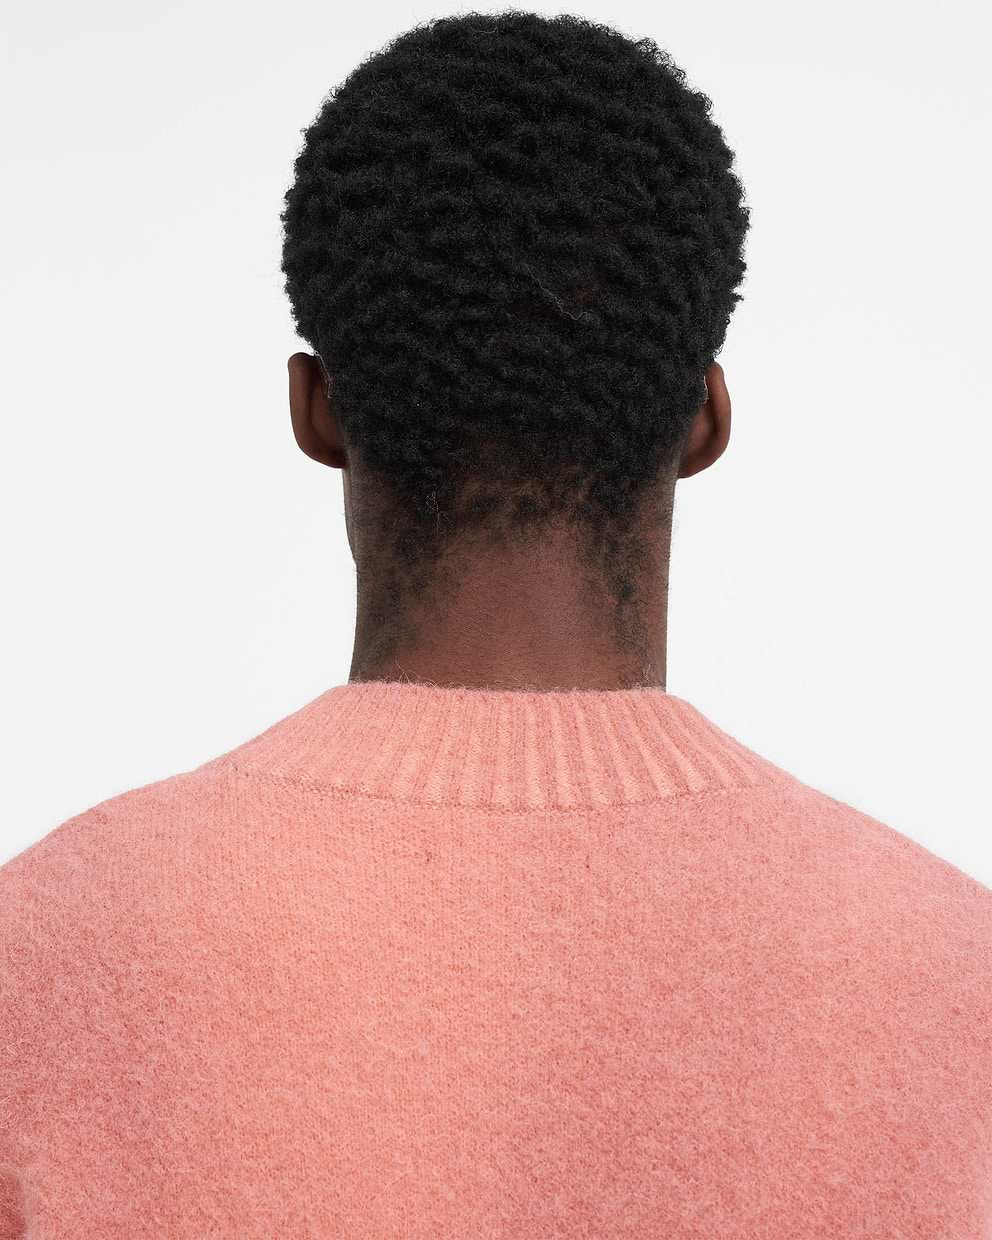 Sprayed Horizons Sweater - Sunrise